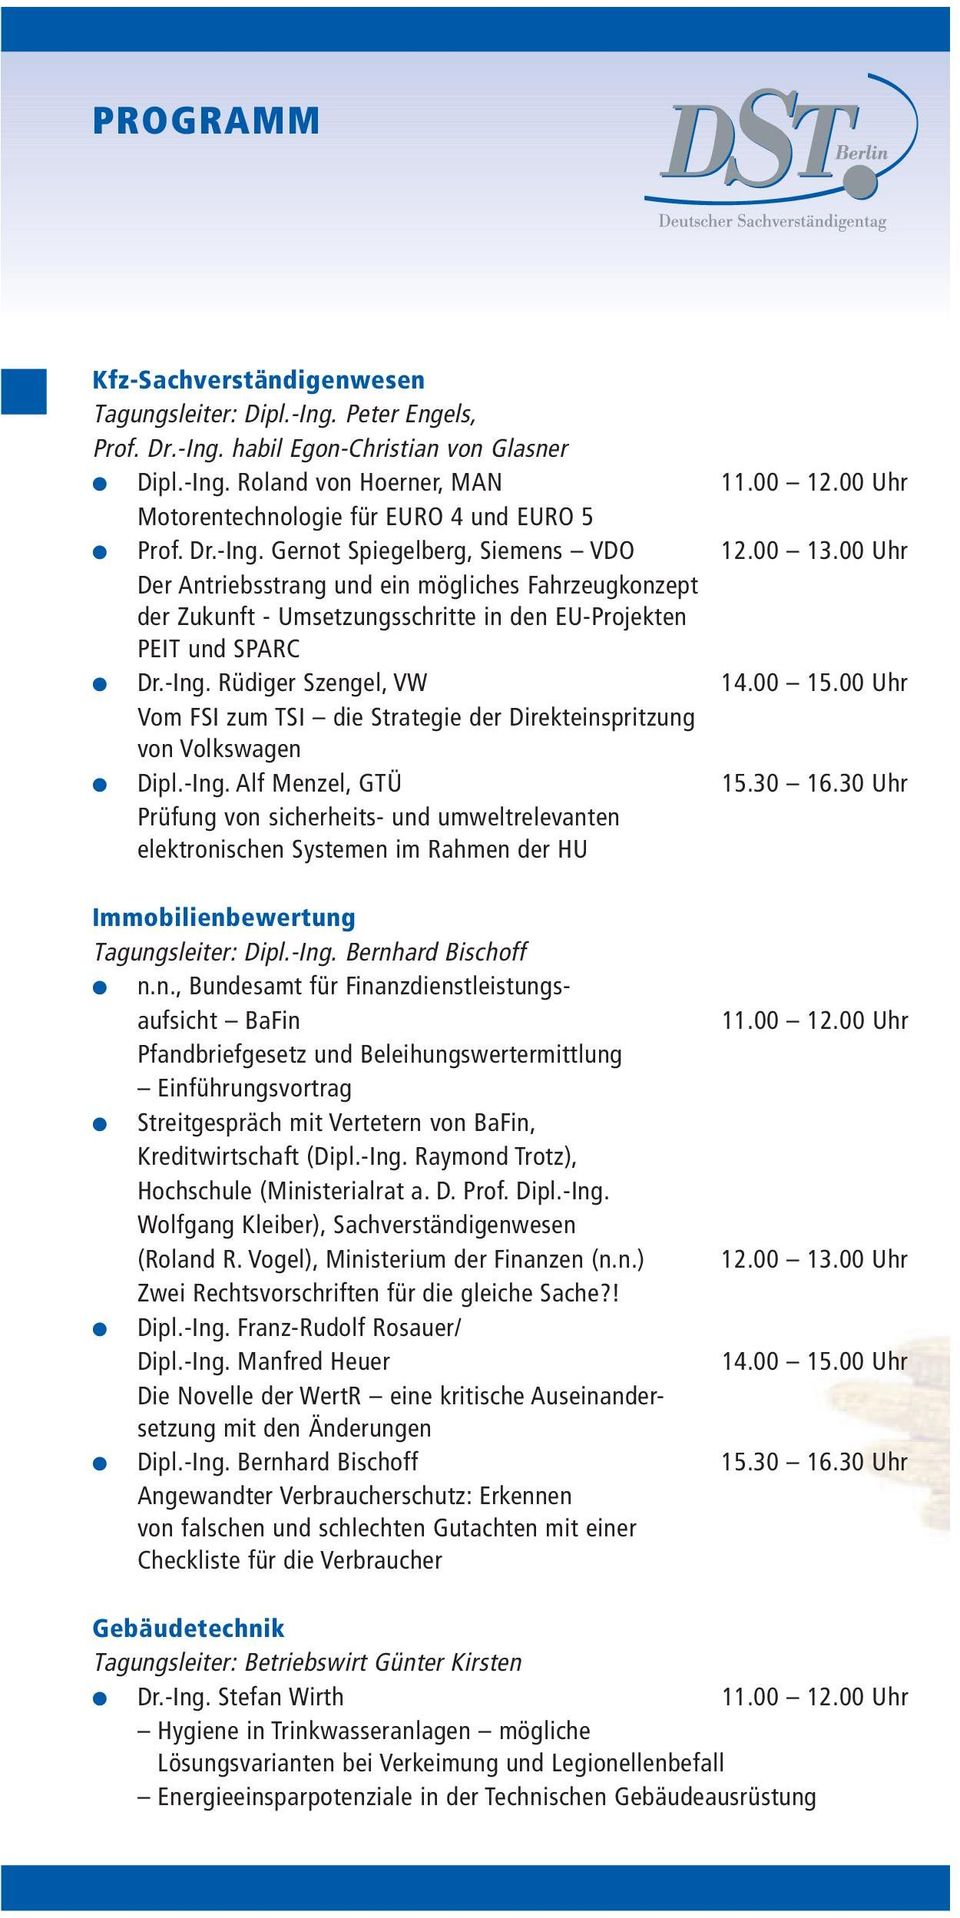 00 Uhr Der Antriebsstrang und ein mögliches Fahrzeugkonzept der Zukunft - Umsetzungsschritte in den EU-Projekten PEIT und SPARC Dr.-Ing. Rüdiger Szengel, VW 14.00 15.